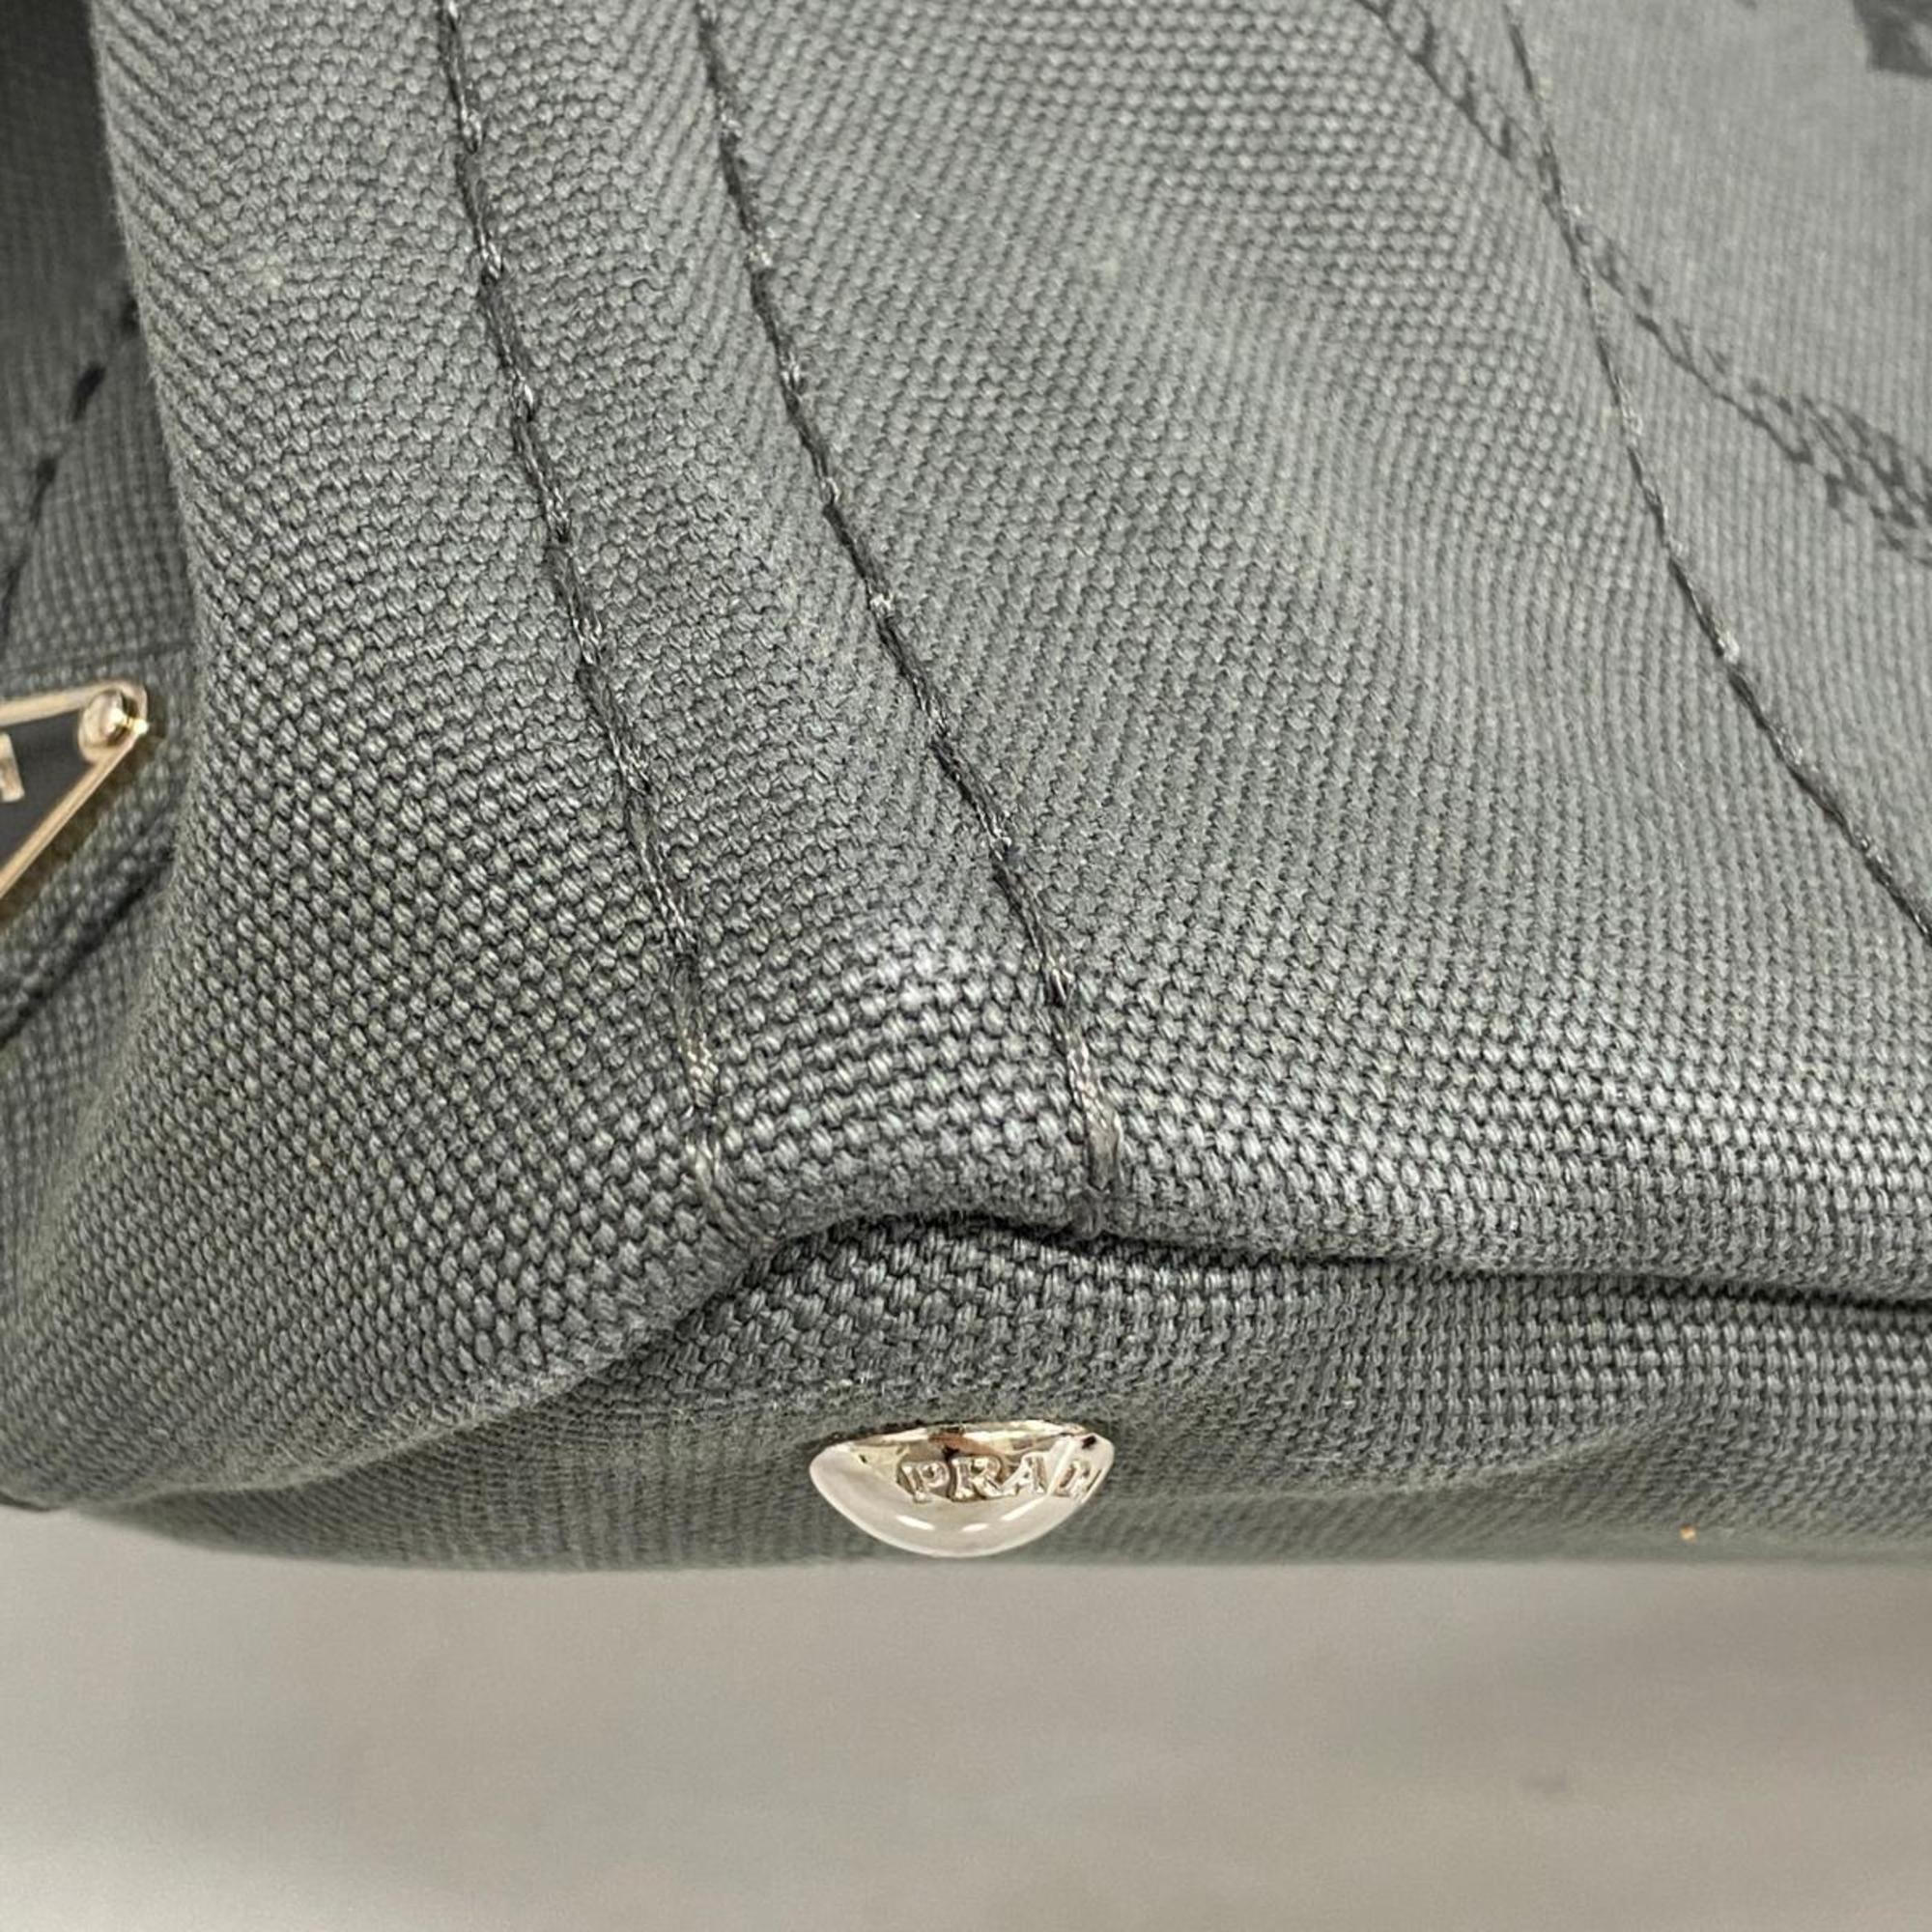 Prada handbag canapa canvas grey ladies